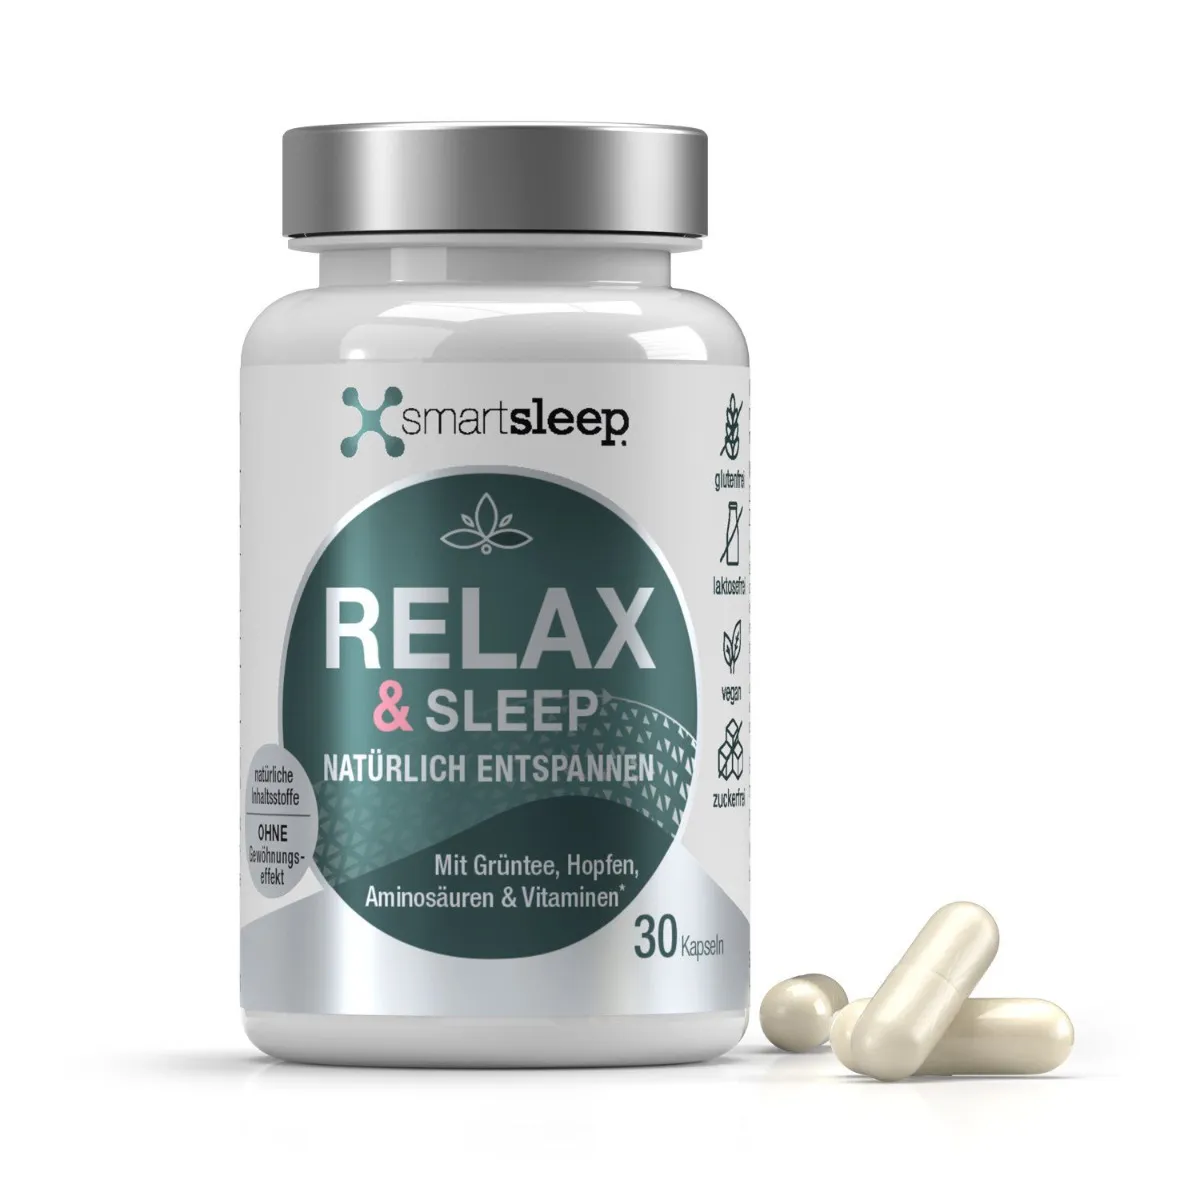 Smartsleep RELAX & SLEEP